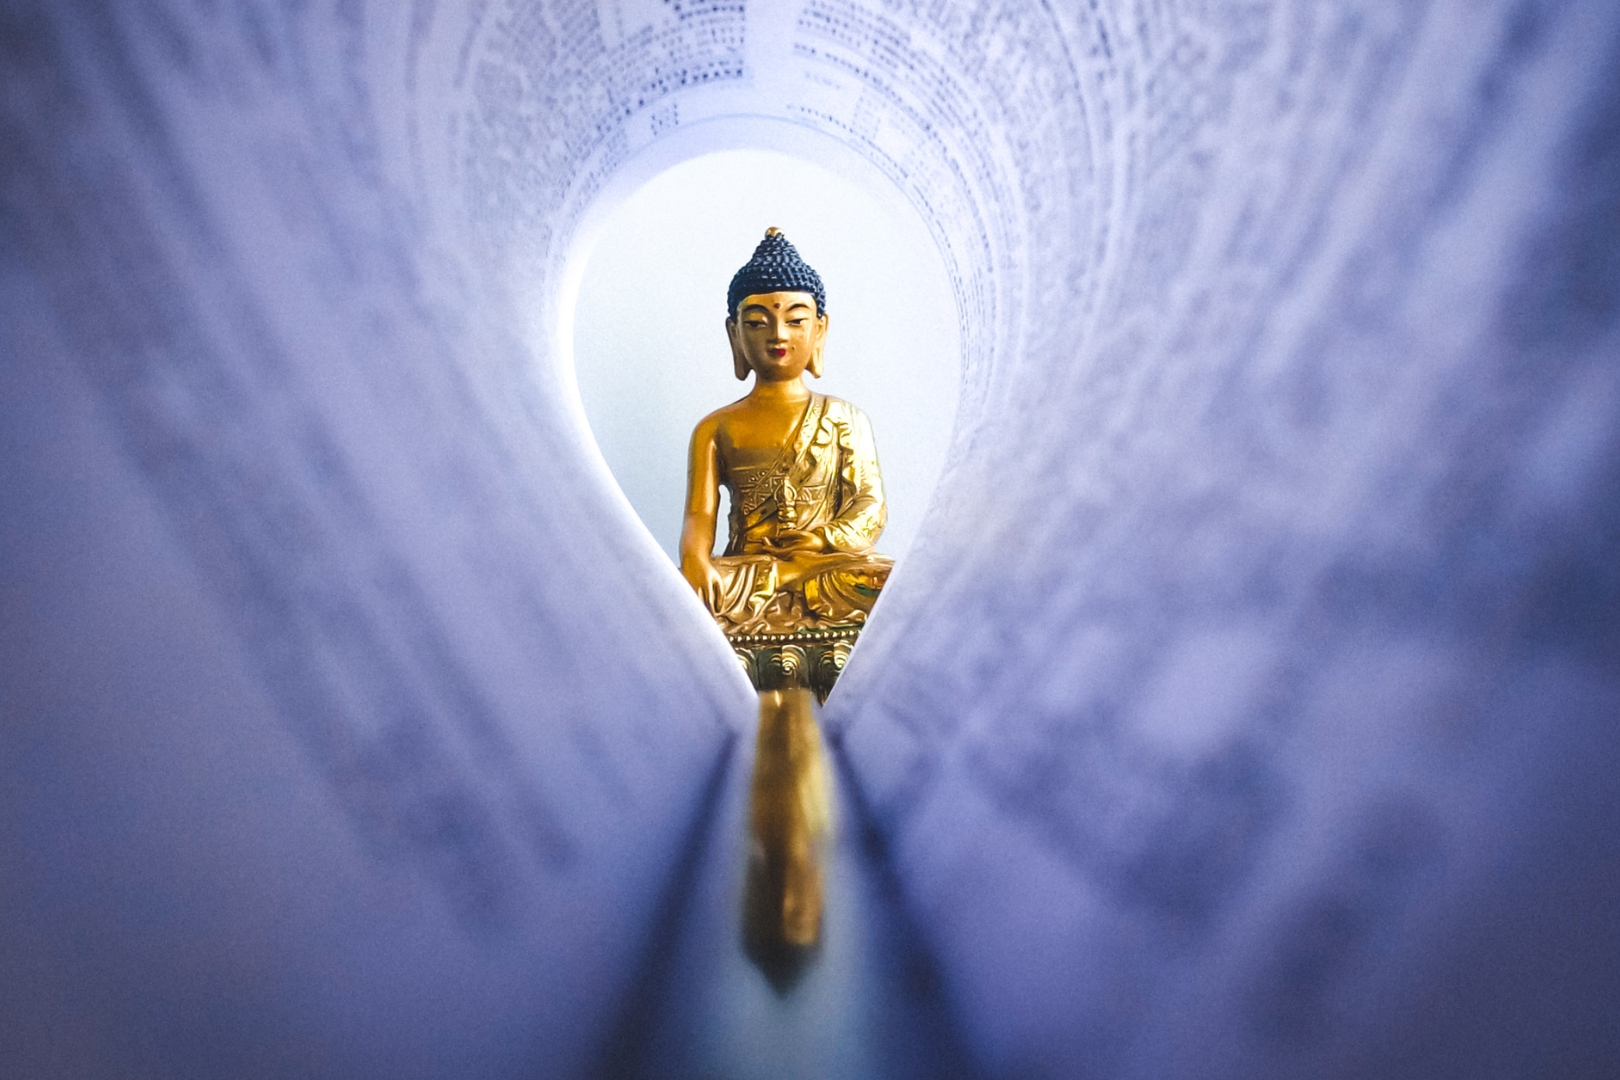 Cùng tìm hiểu sâu hơn về những bài học vàng mà Đức Phật muốn chúng ta biết để sống một cuộc sống ý nghĩa hơn.